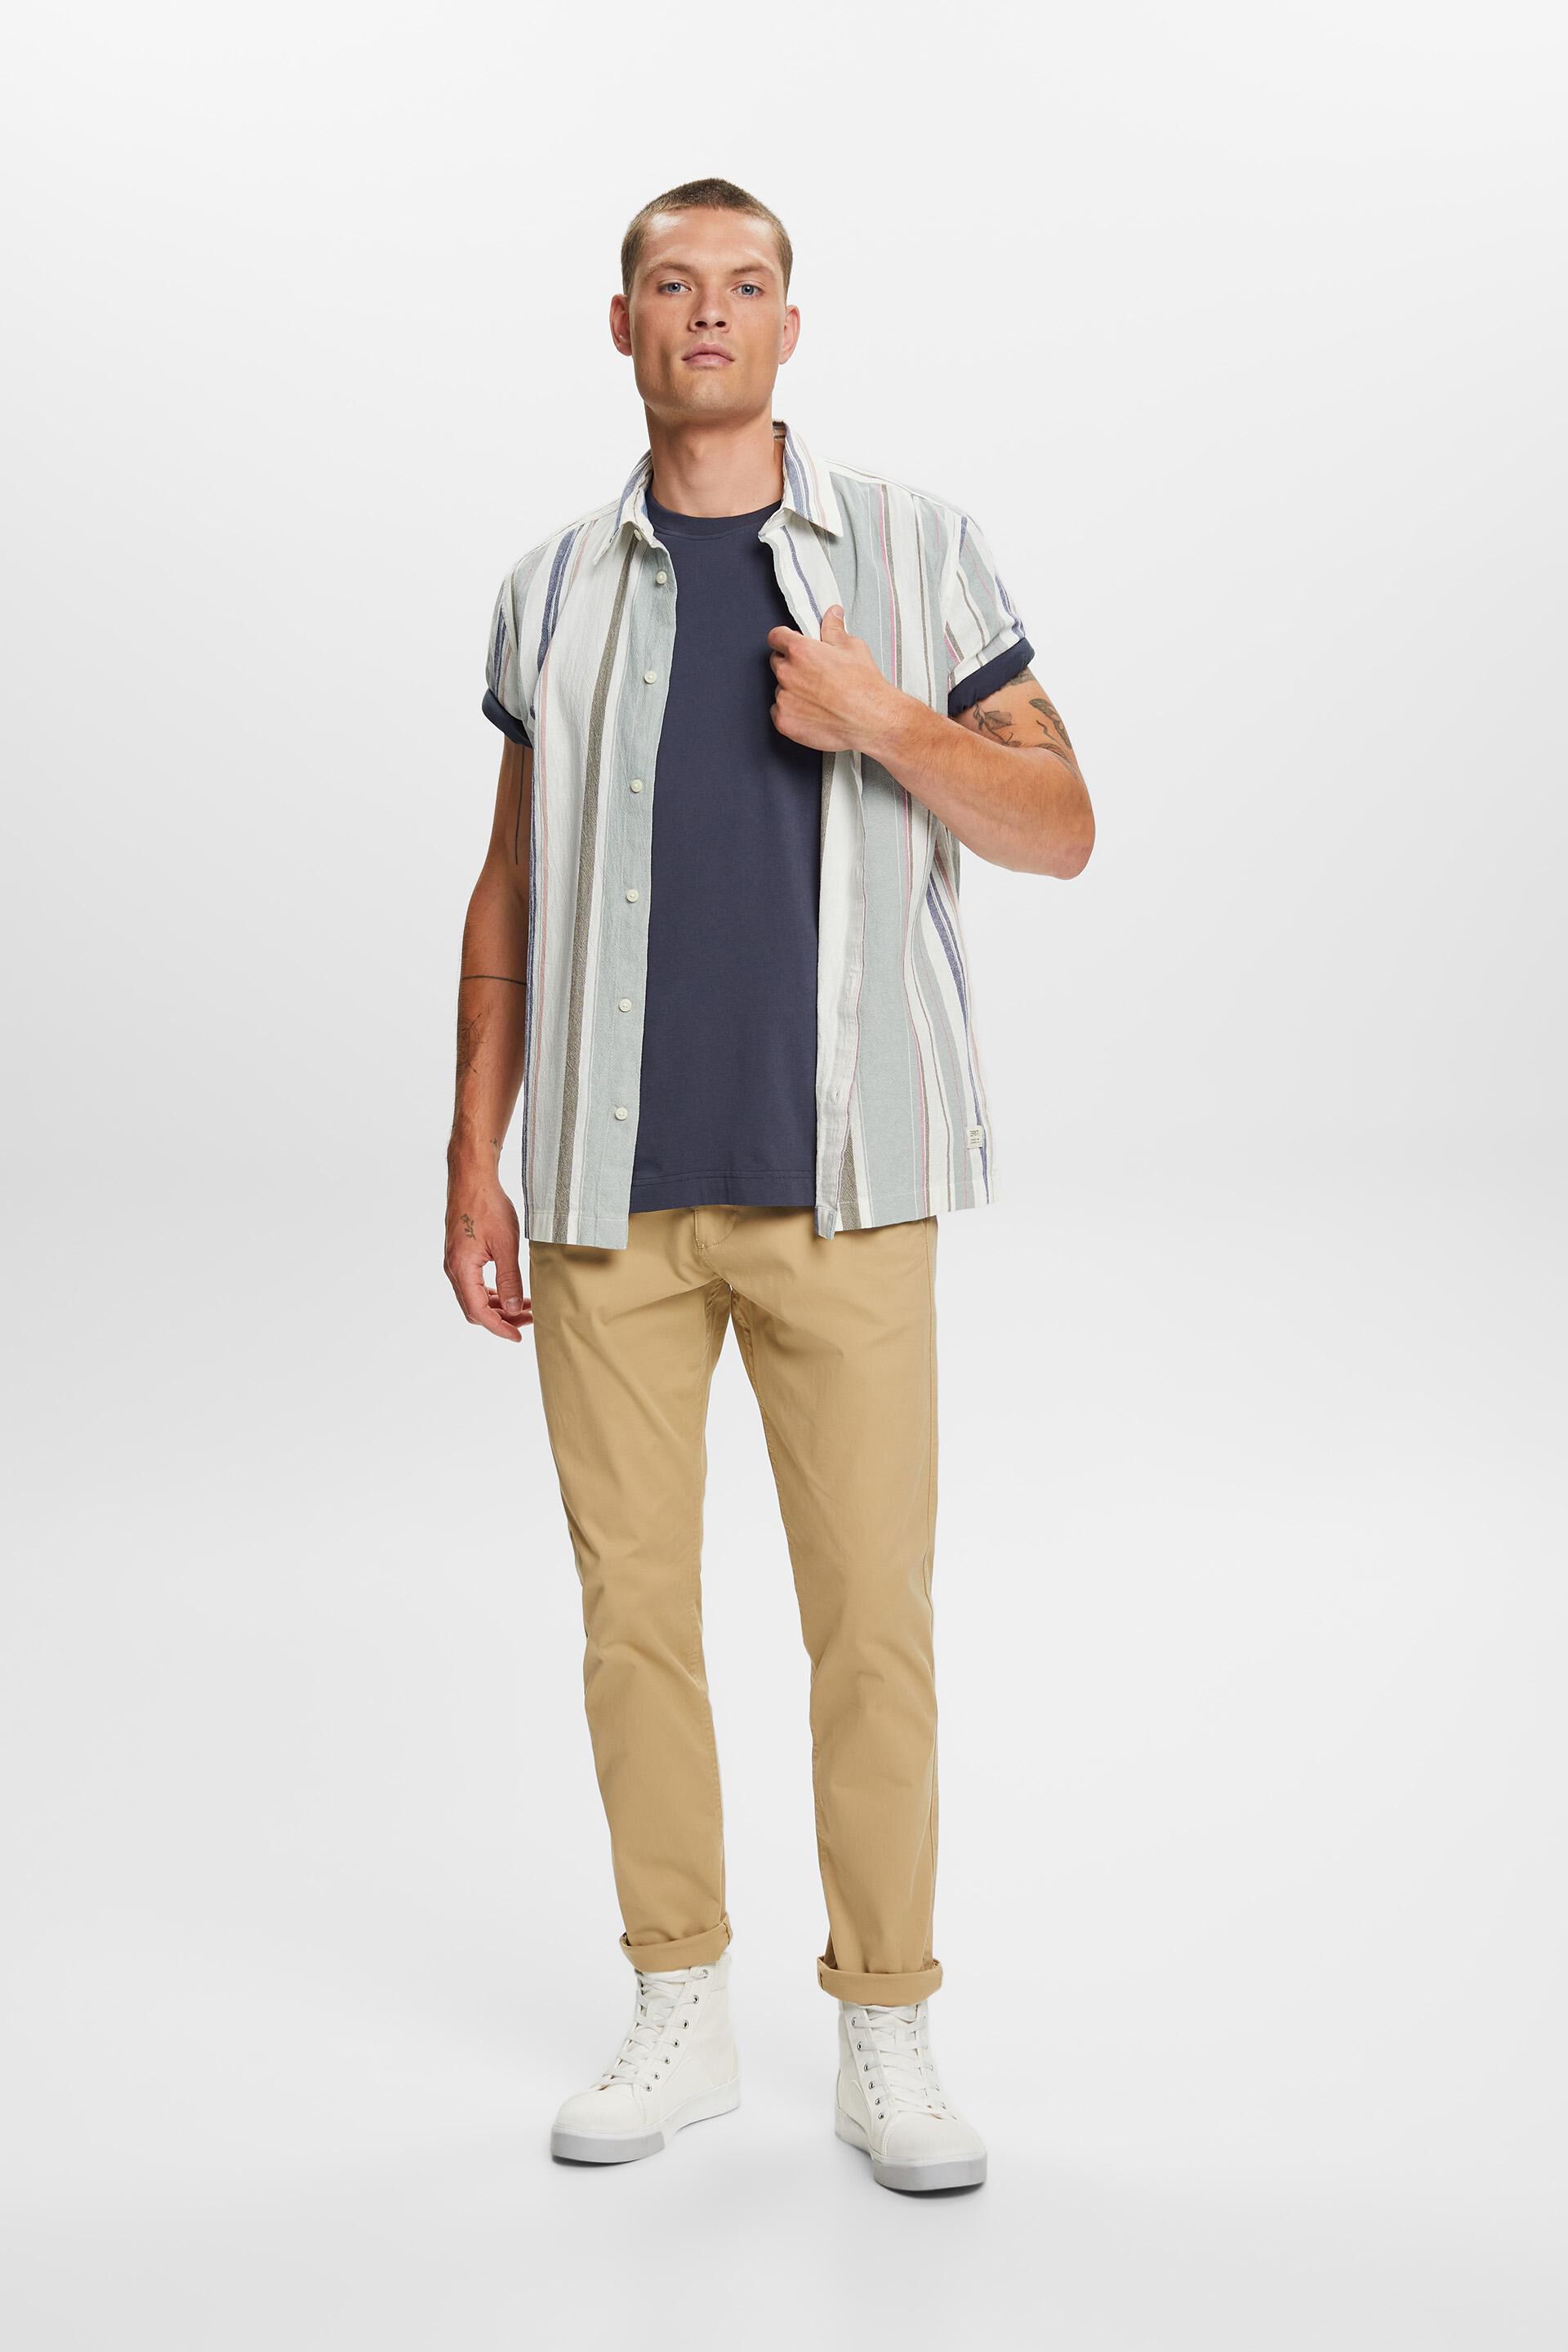 Esprit 100 mit Jersey-T-Shirt Rundhalsausschnitt, % Baumwolle